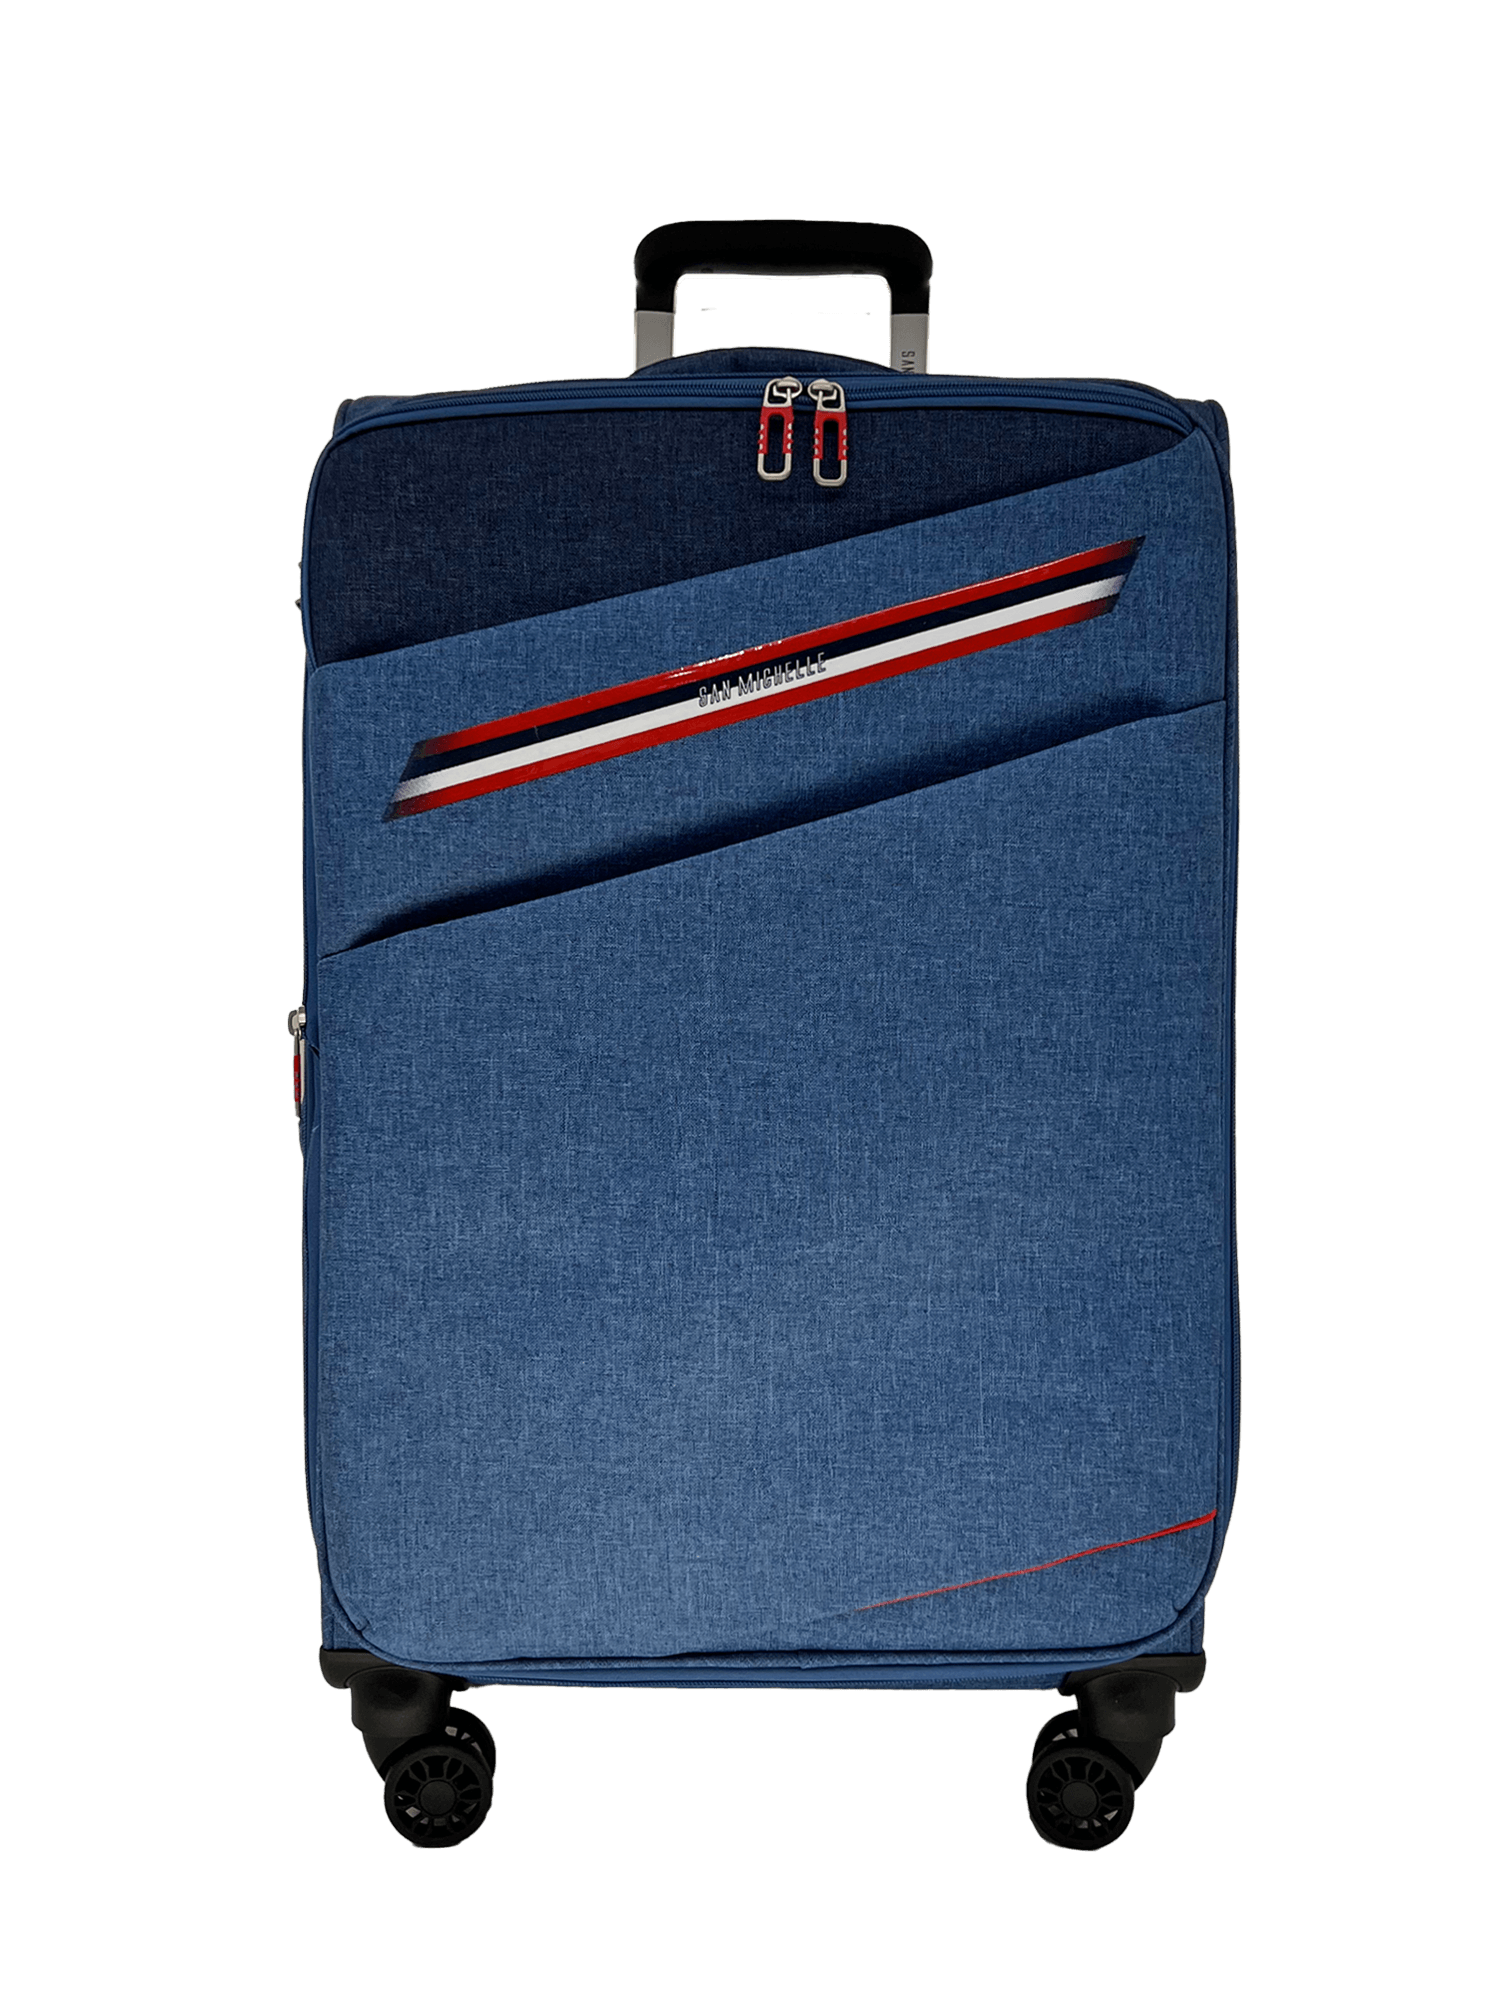 San Michelle Adventurer Pro 67cm Suitcase - San Michelle Bags suitcase nz